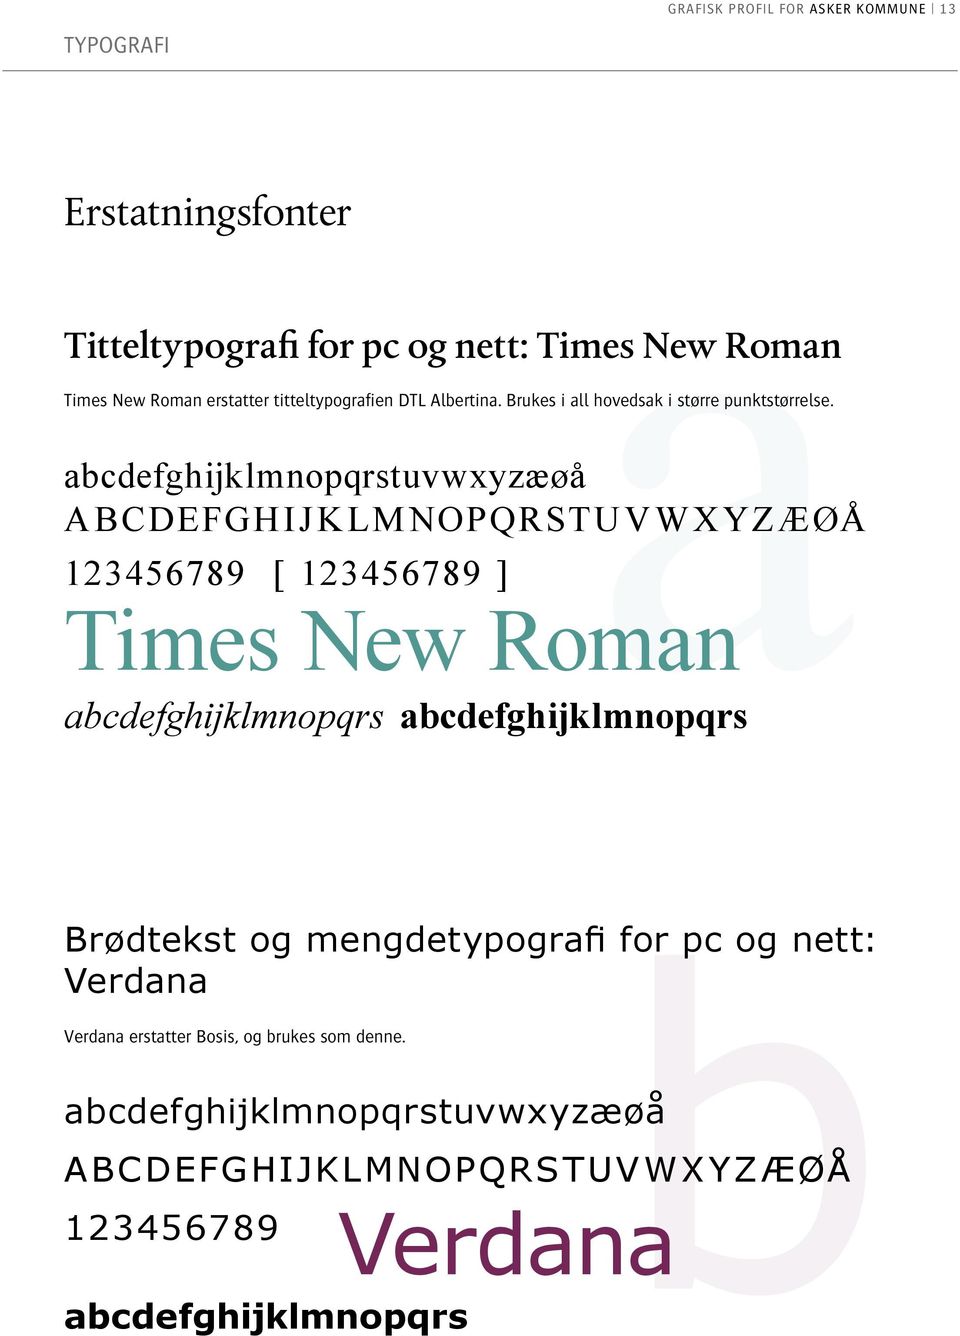 abcdefghijklmnopqrstuvwxyzæøåa Typografi grafisk profil for Asker kommune 13 123456789 [ 123456789 ] Times New Roman